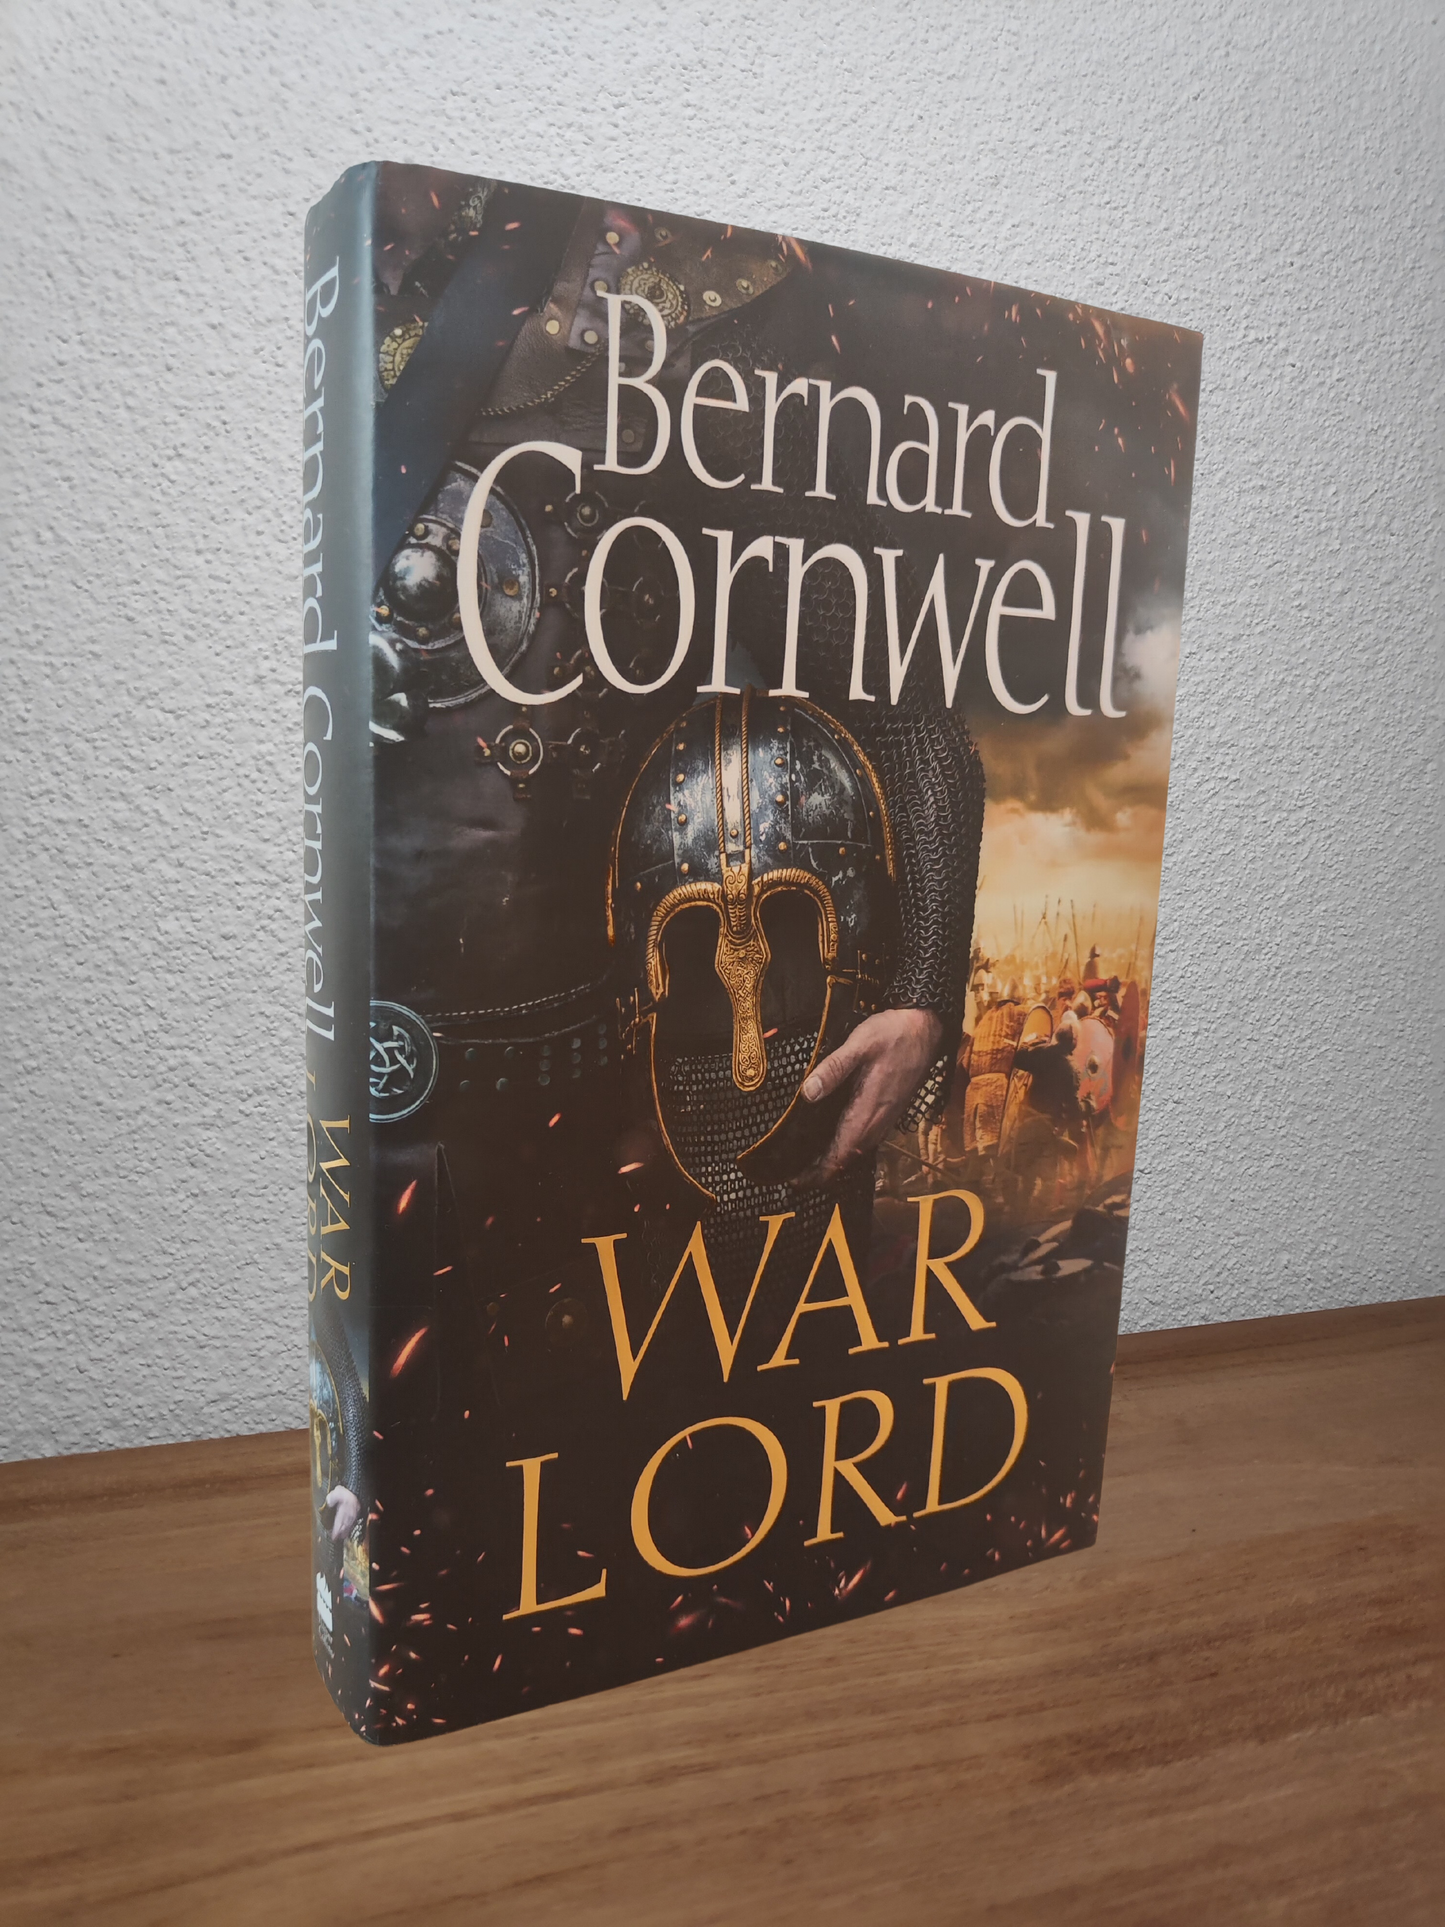 Bernard Cornwell - War Lord (The Last Kingdom #13)